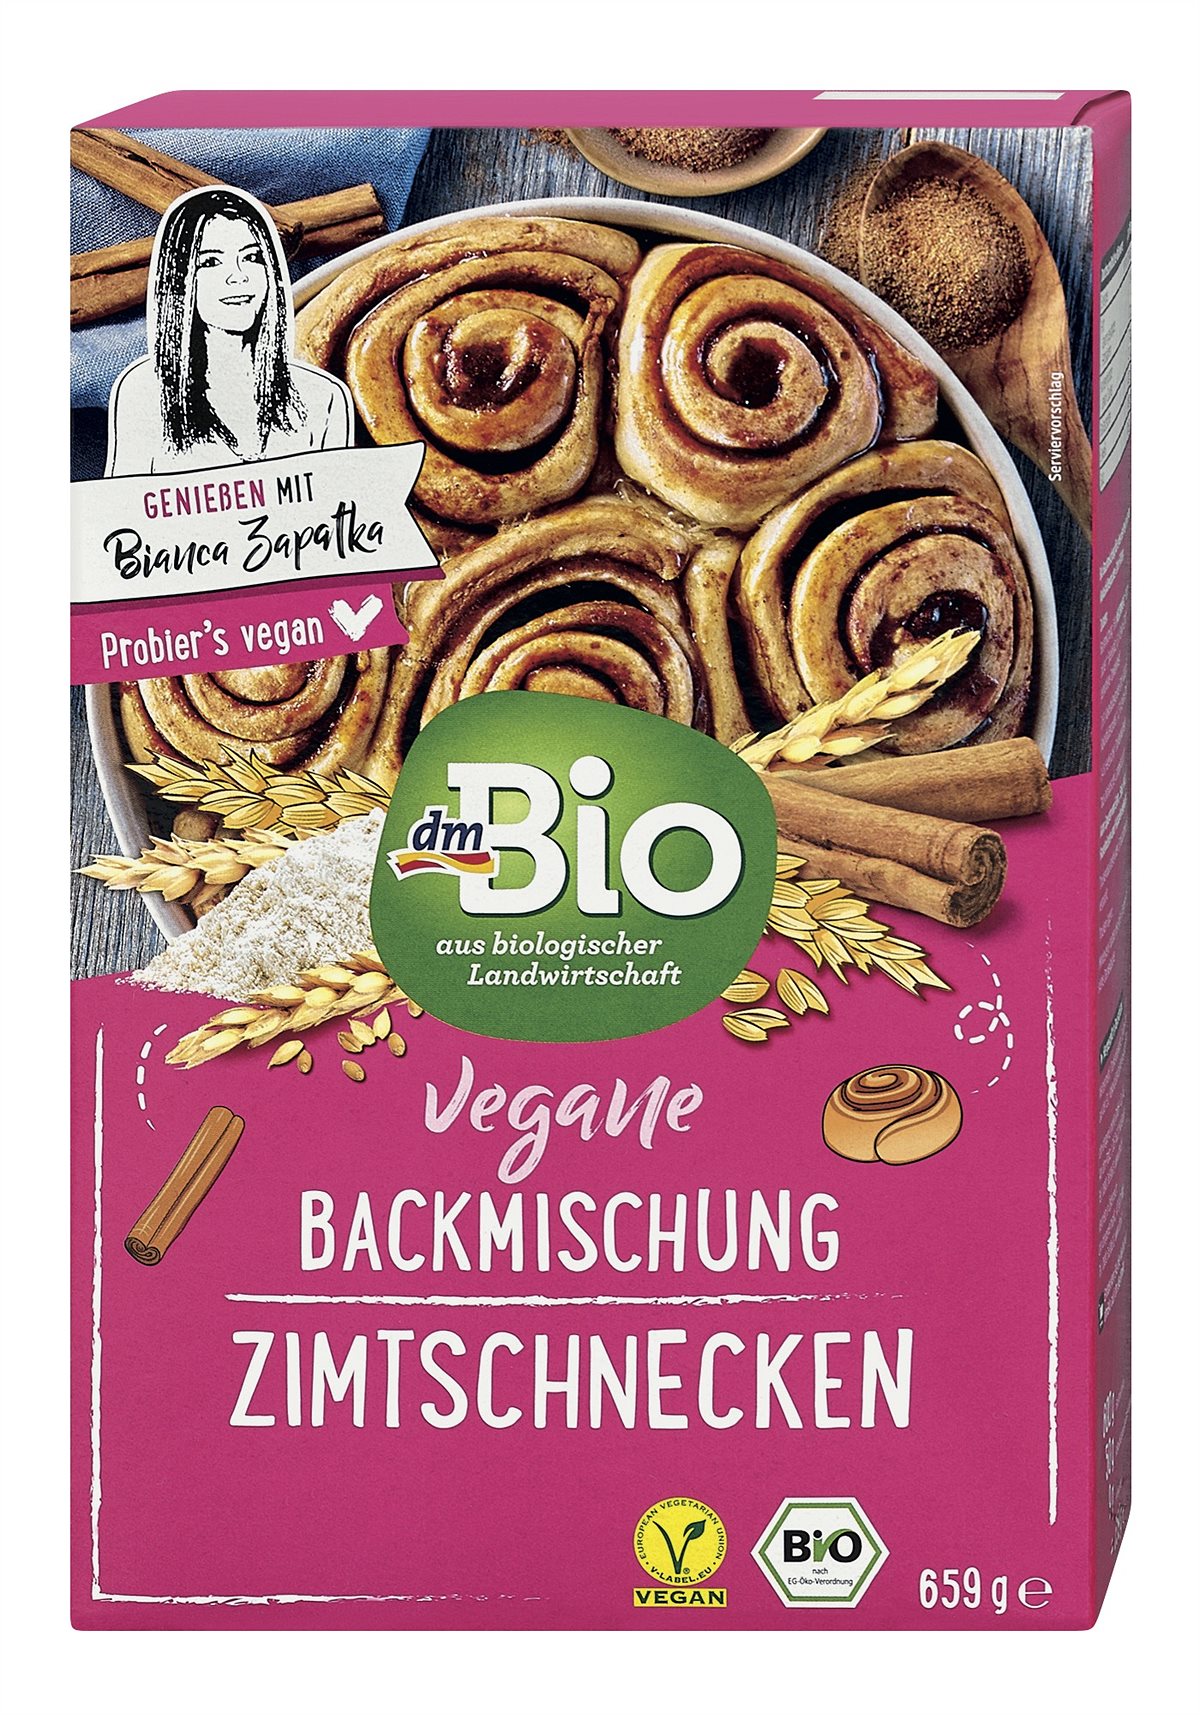 dmBio Vegane Zimtschnecken Backmischung 659g 2,95 Euro